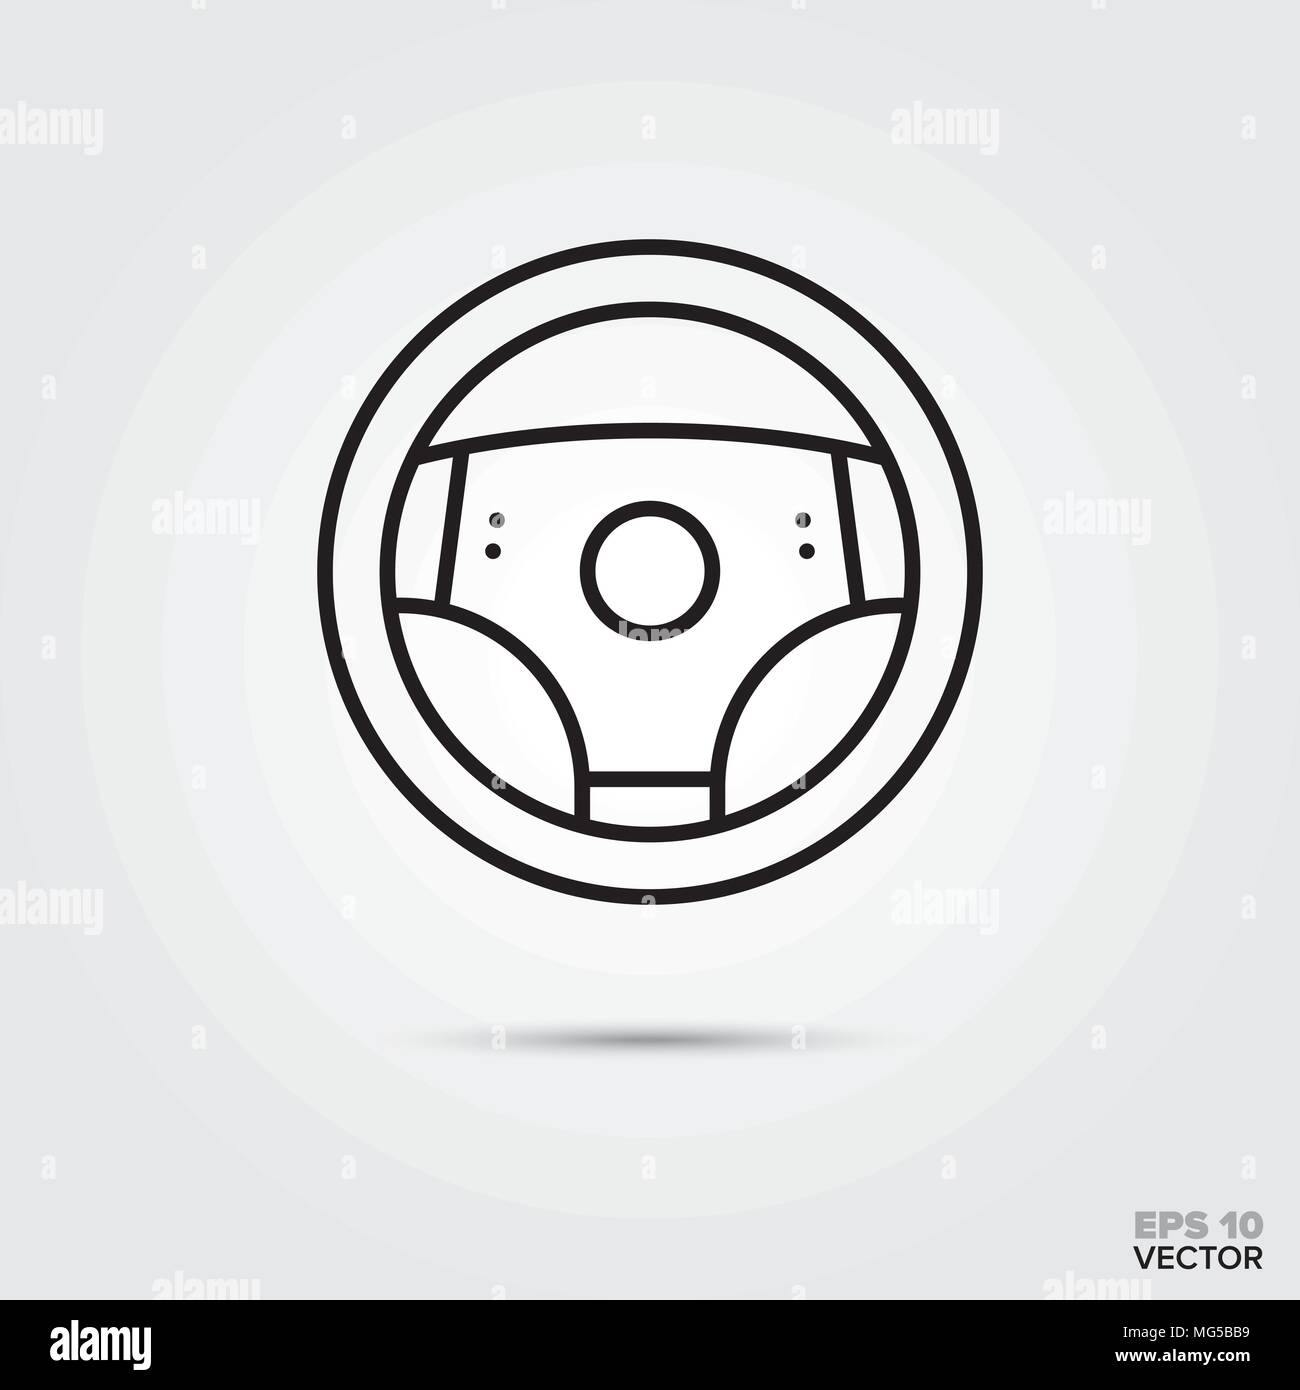 Car steering wheel vector icon. Automotive parts, repair and service symbol. Stock Vector